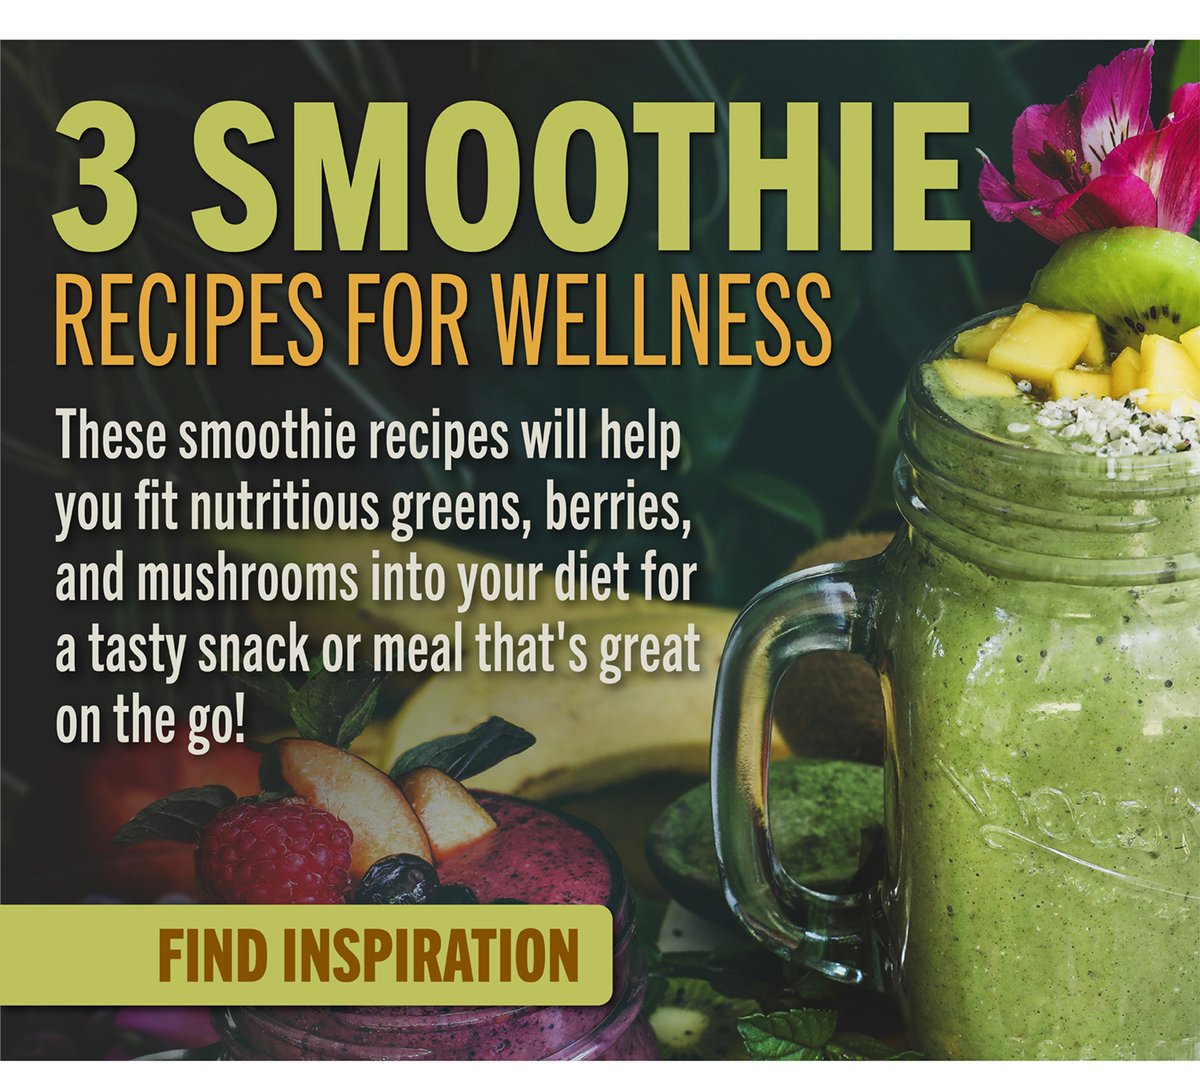 3 Smoothie Recipes for Wellness